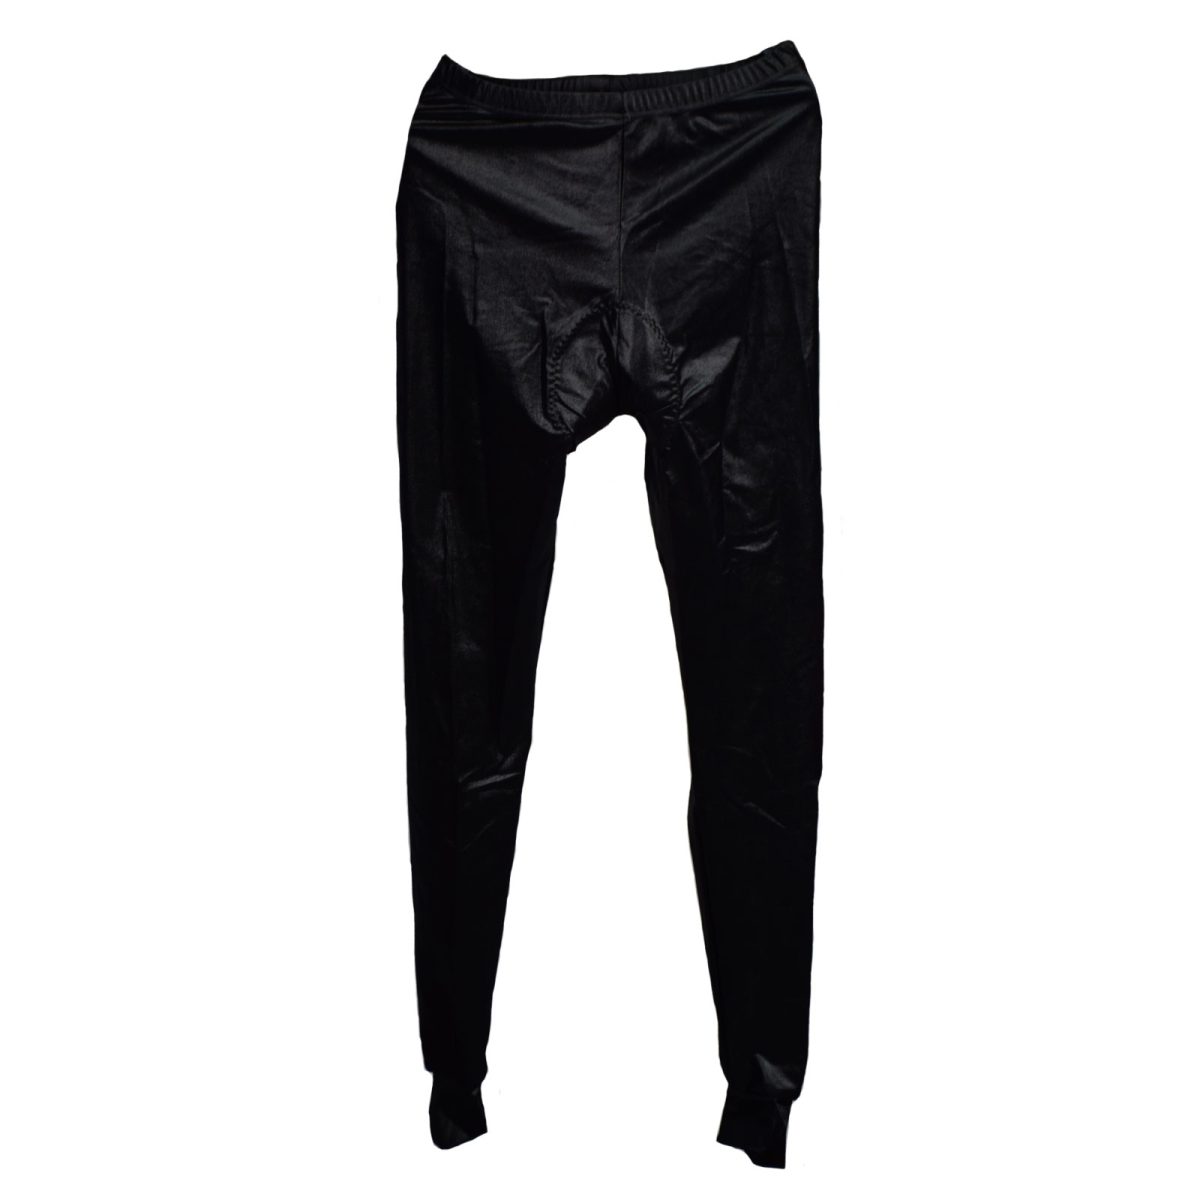 Pantalon negro Talla-6-M